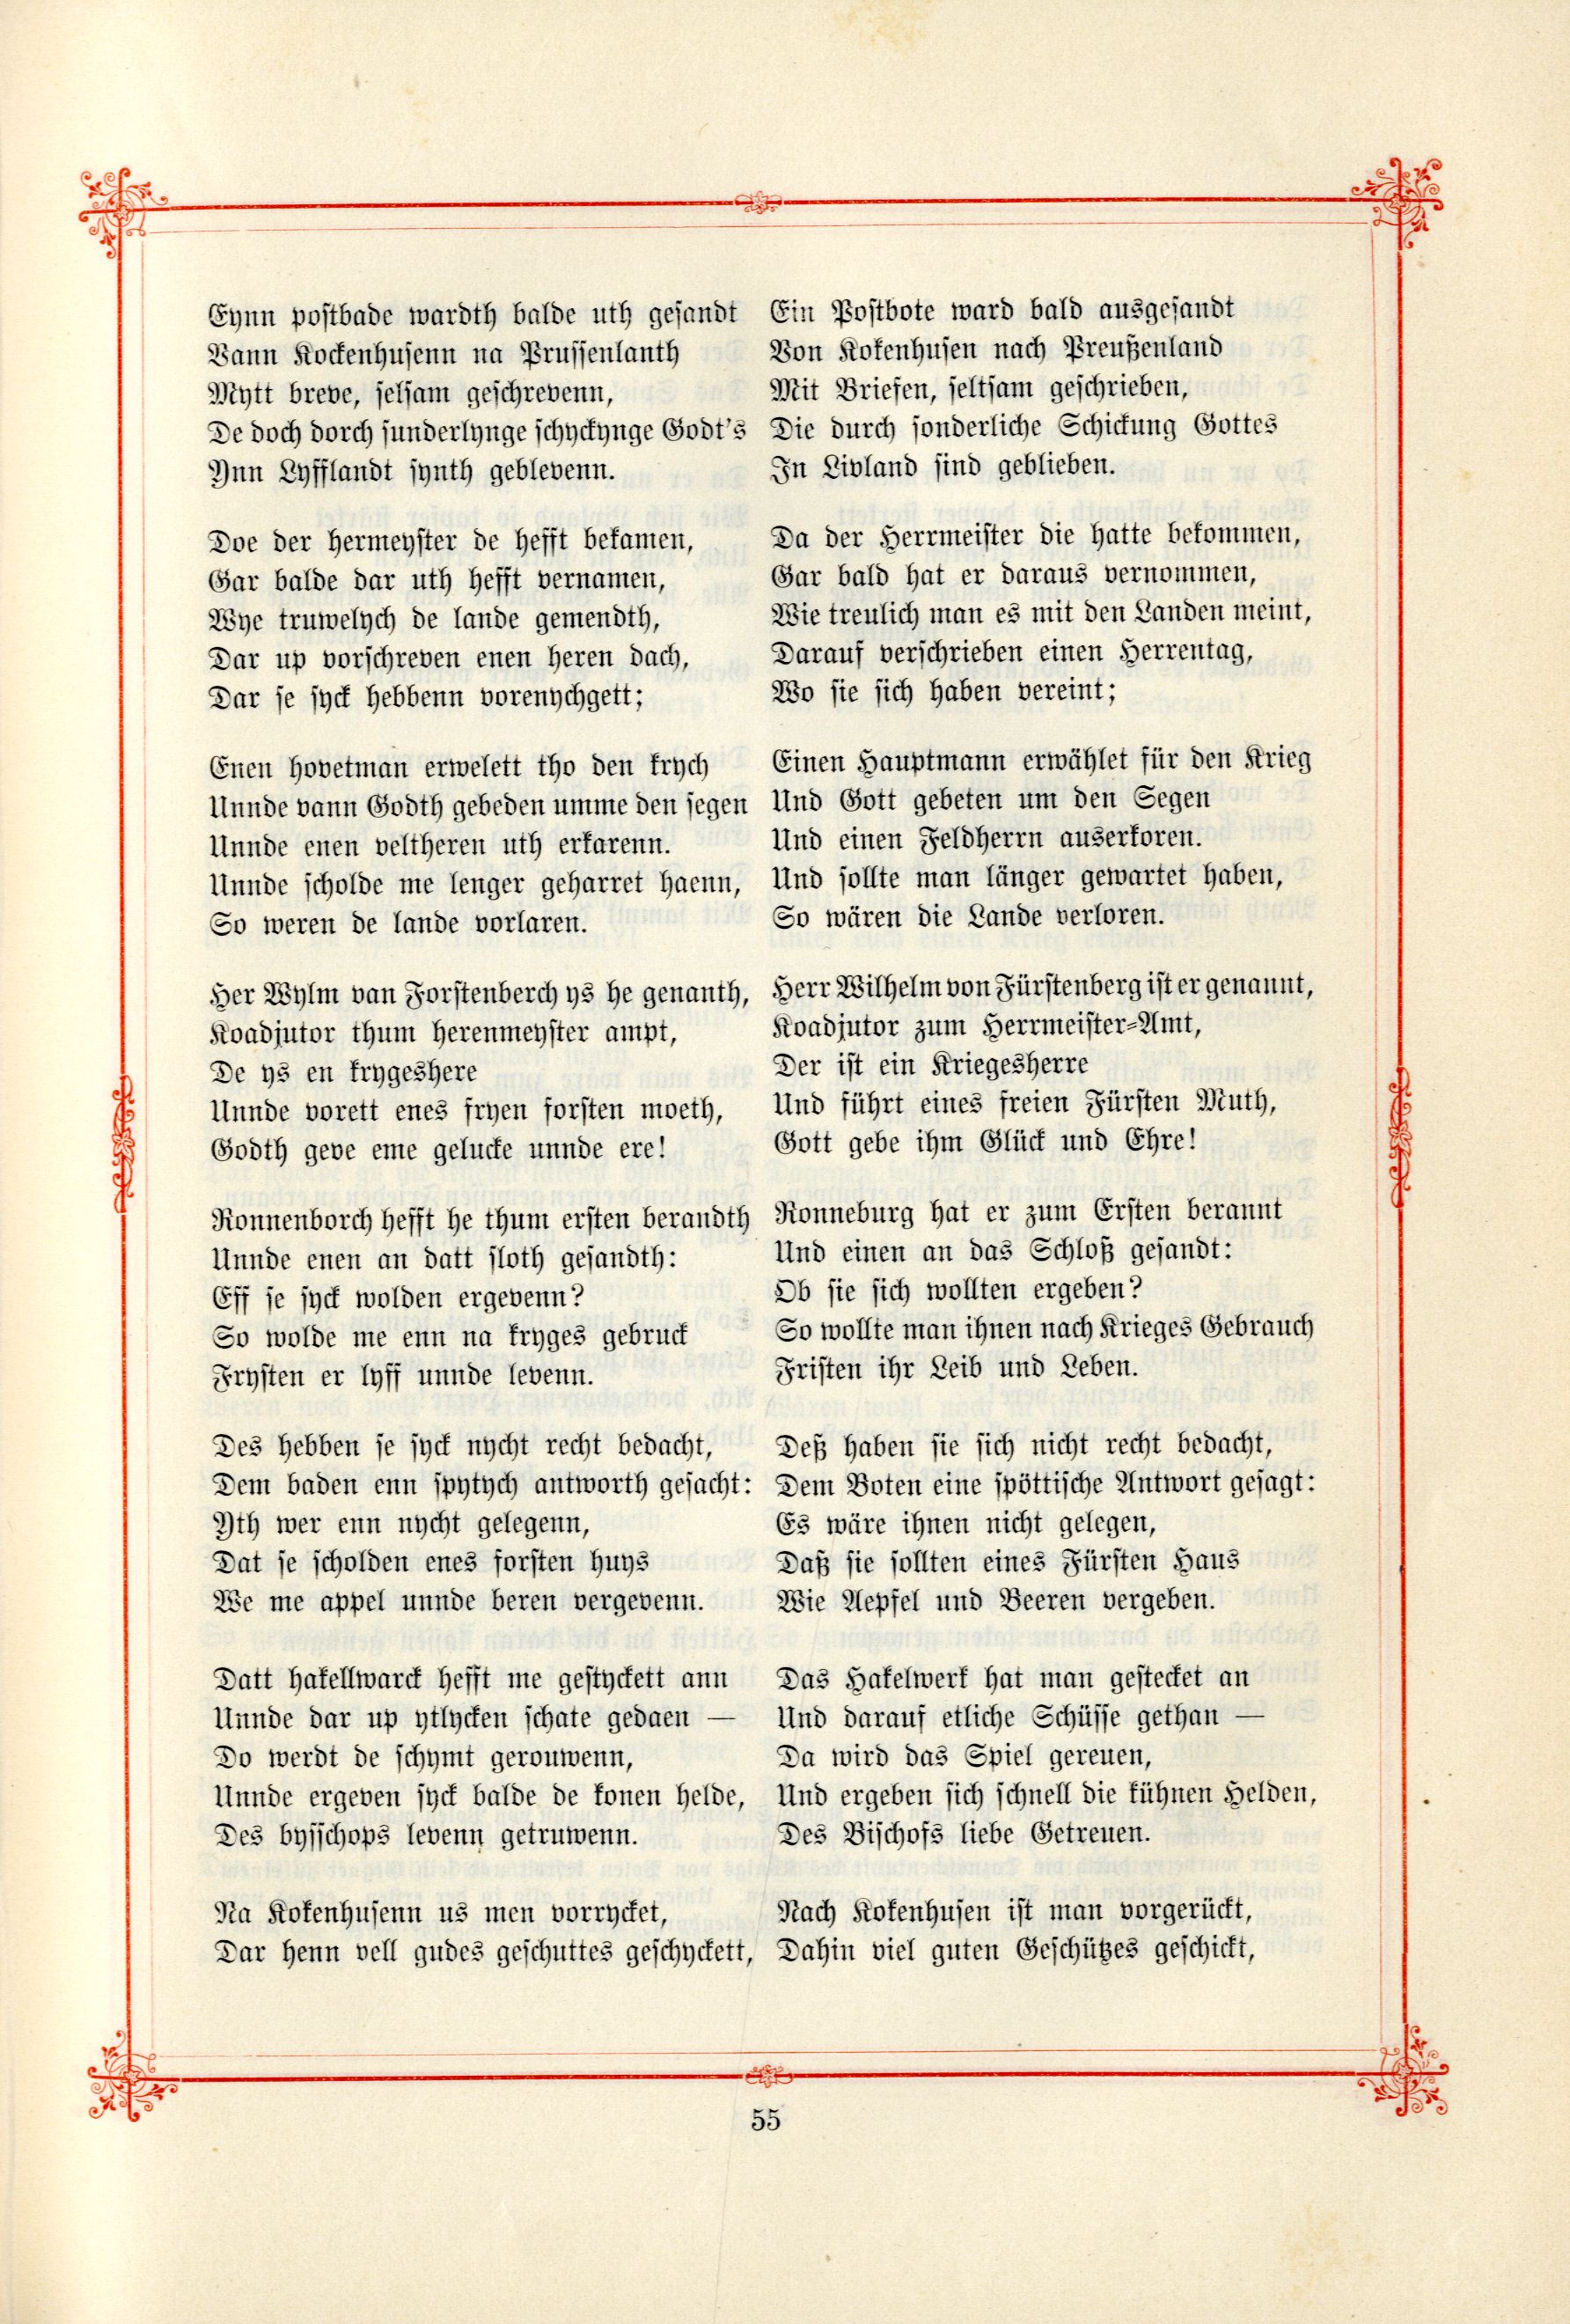 Das Baltische Dichterbuch (1895) | 101. (55) Main body of text